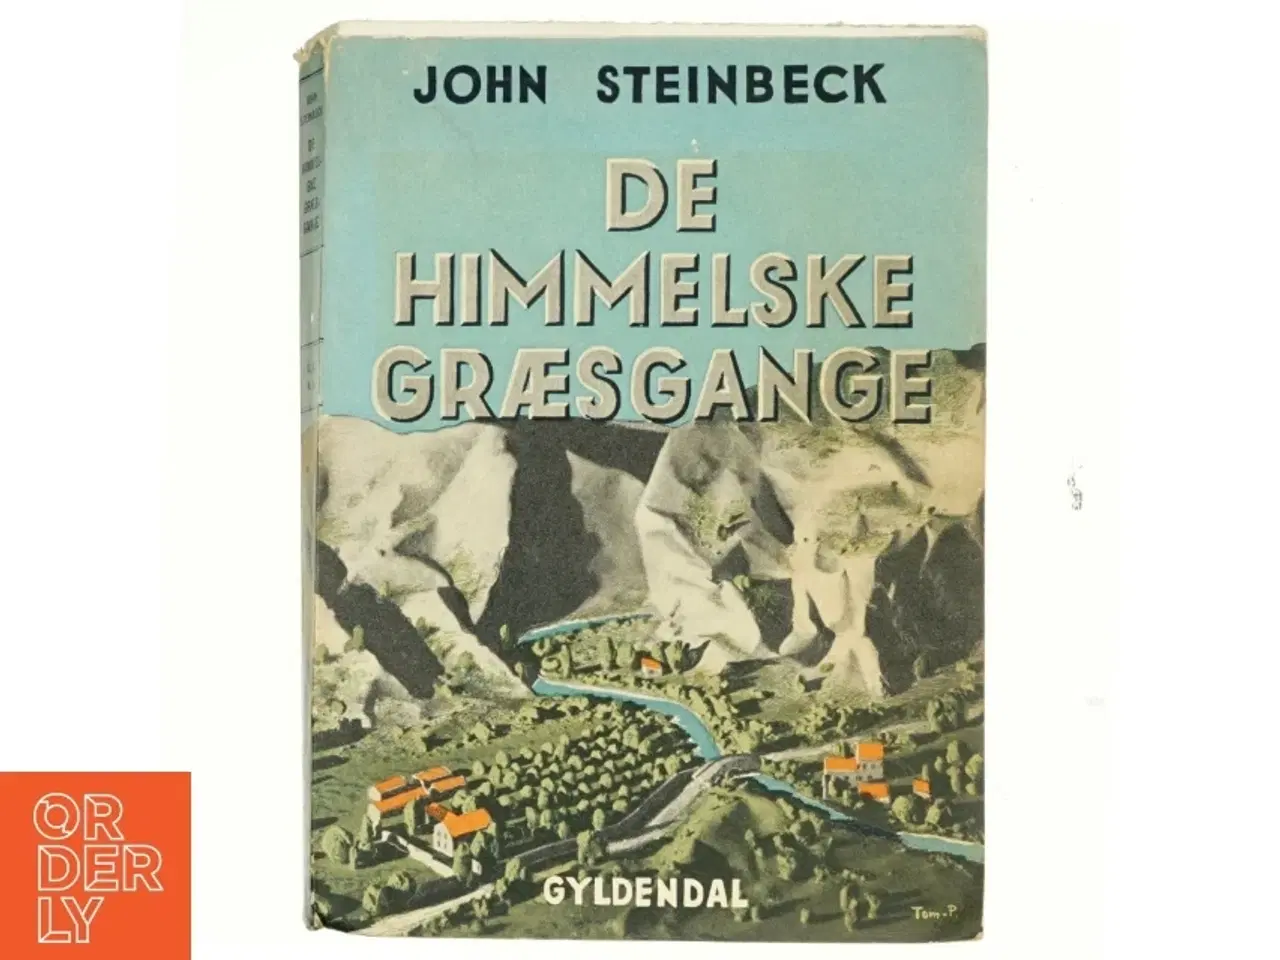 Billede 1 - De himmelske græsgange af John Steinbeck